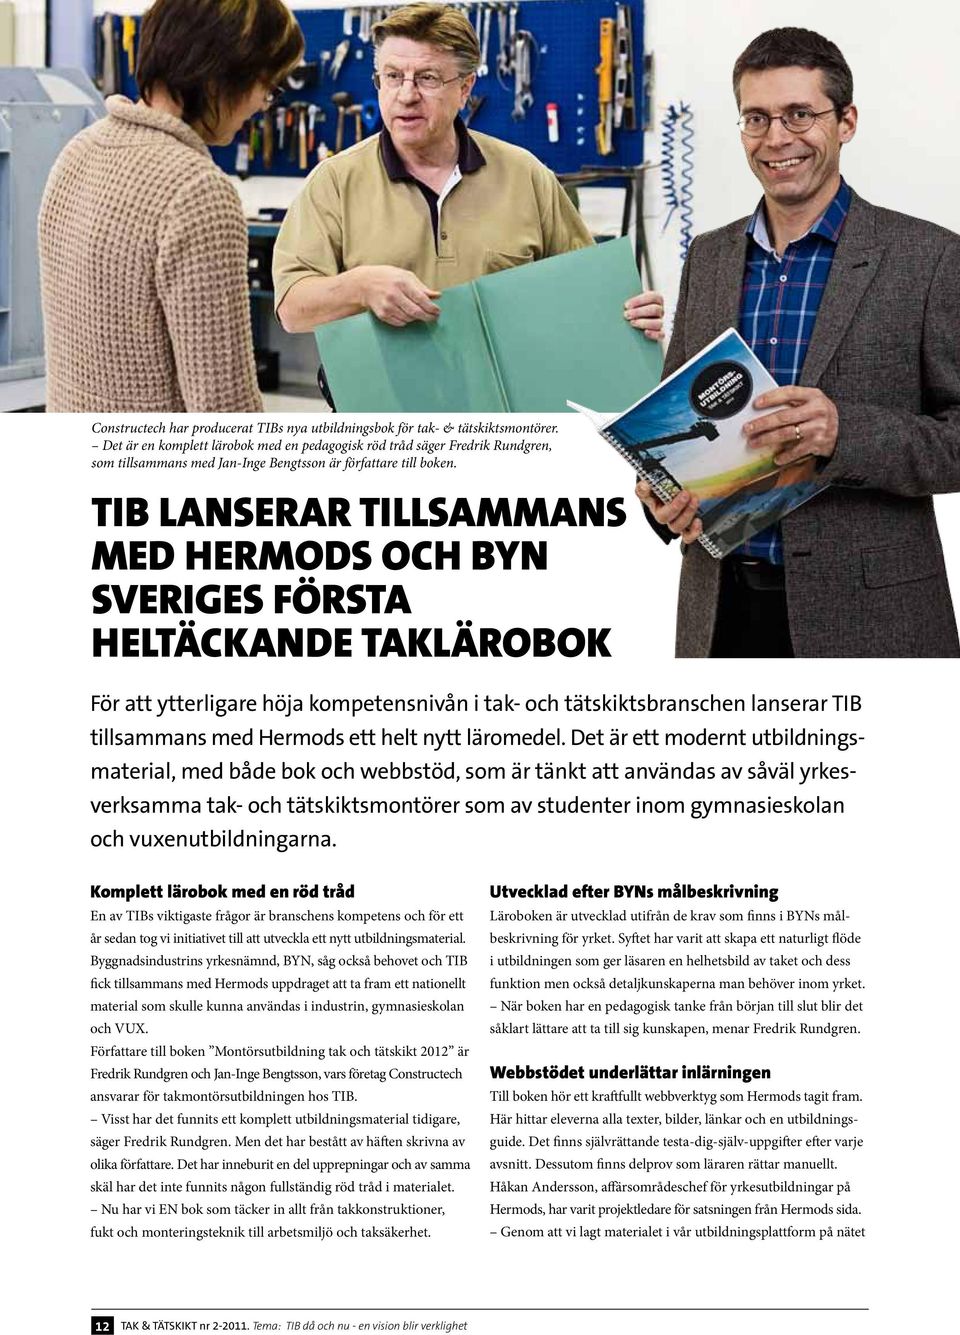 TIB lanserar tillsammans med Hermods och BYN Sveriges första heltäckande taklärobok För att ytterligare höja kompetensnivån i tak- och tätskiktsbranschen lanserar TIB tillsammans med Hermods ett helt